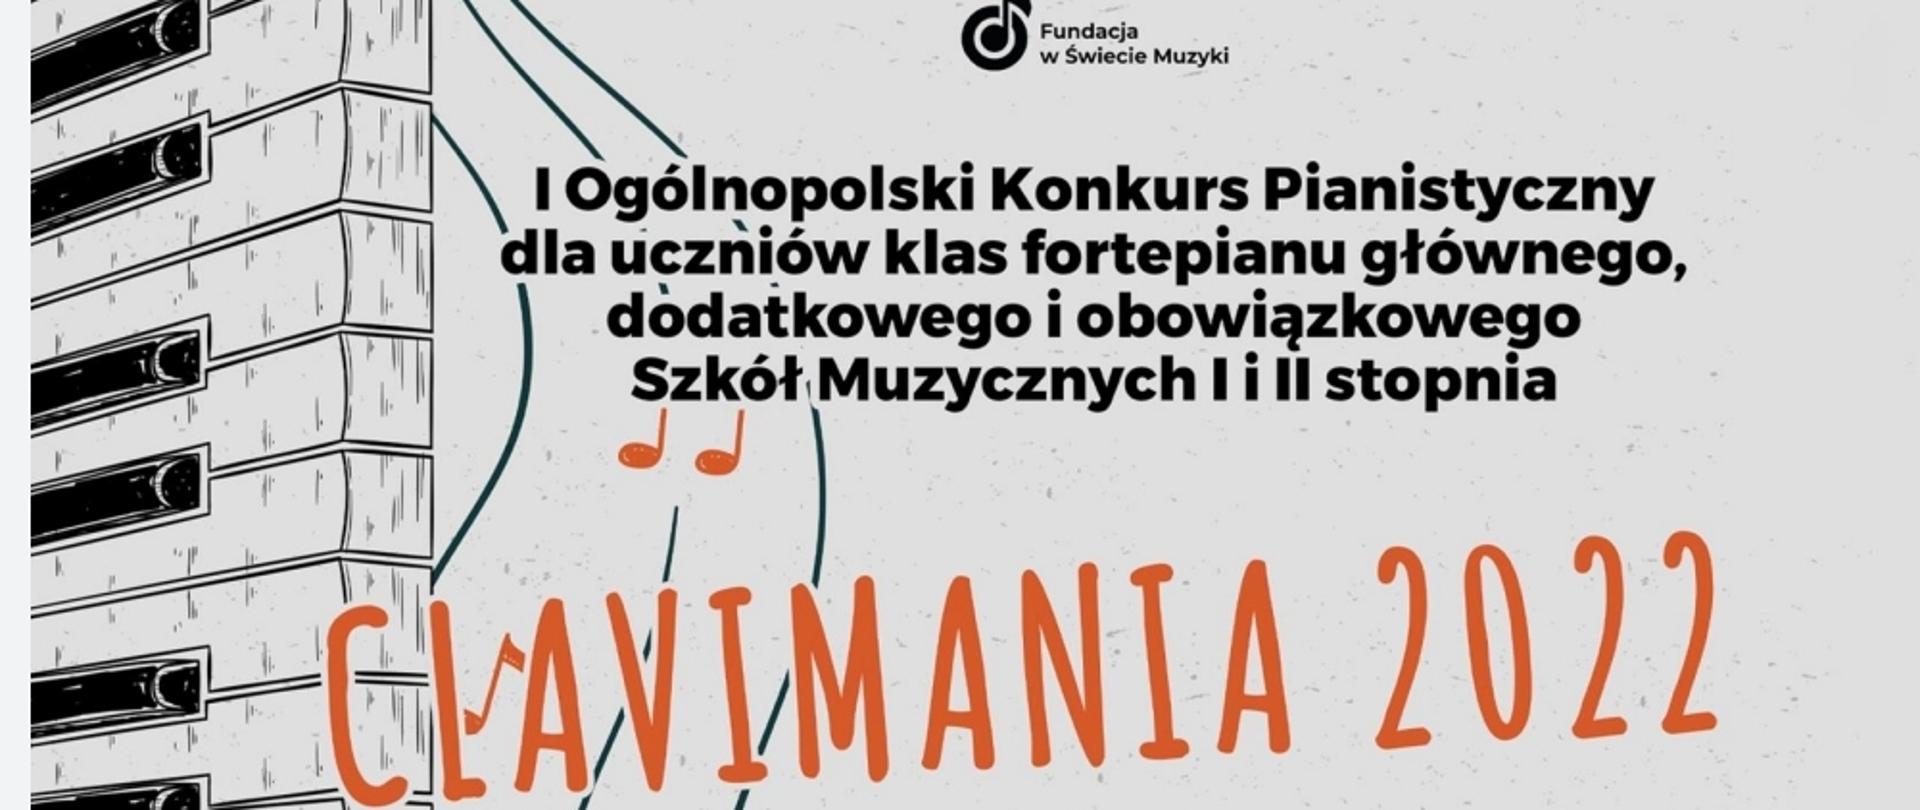 Dyplom wyróżnienia I stopnia Hanna Kacyniak, I ogólnopolski konkurs pianistyczny dla uczniów klas fortepianu Clavimania 2022, z lewej strony klawiatura , na dole plakatyu loga sponsorów, powyżej jury.